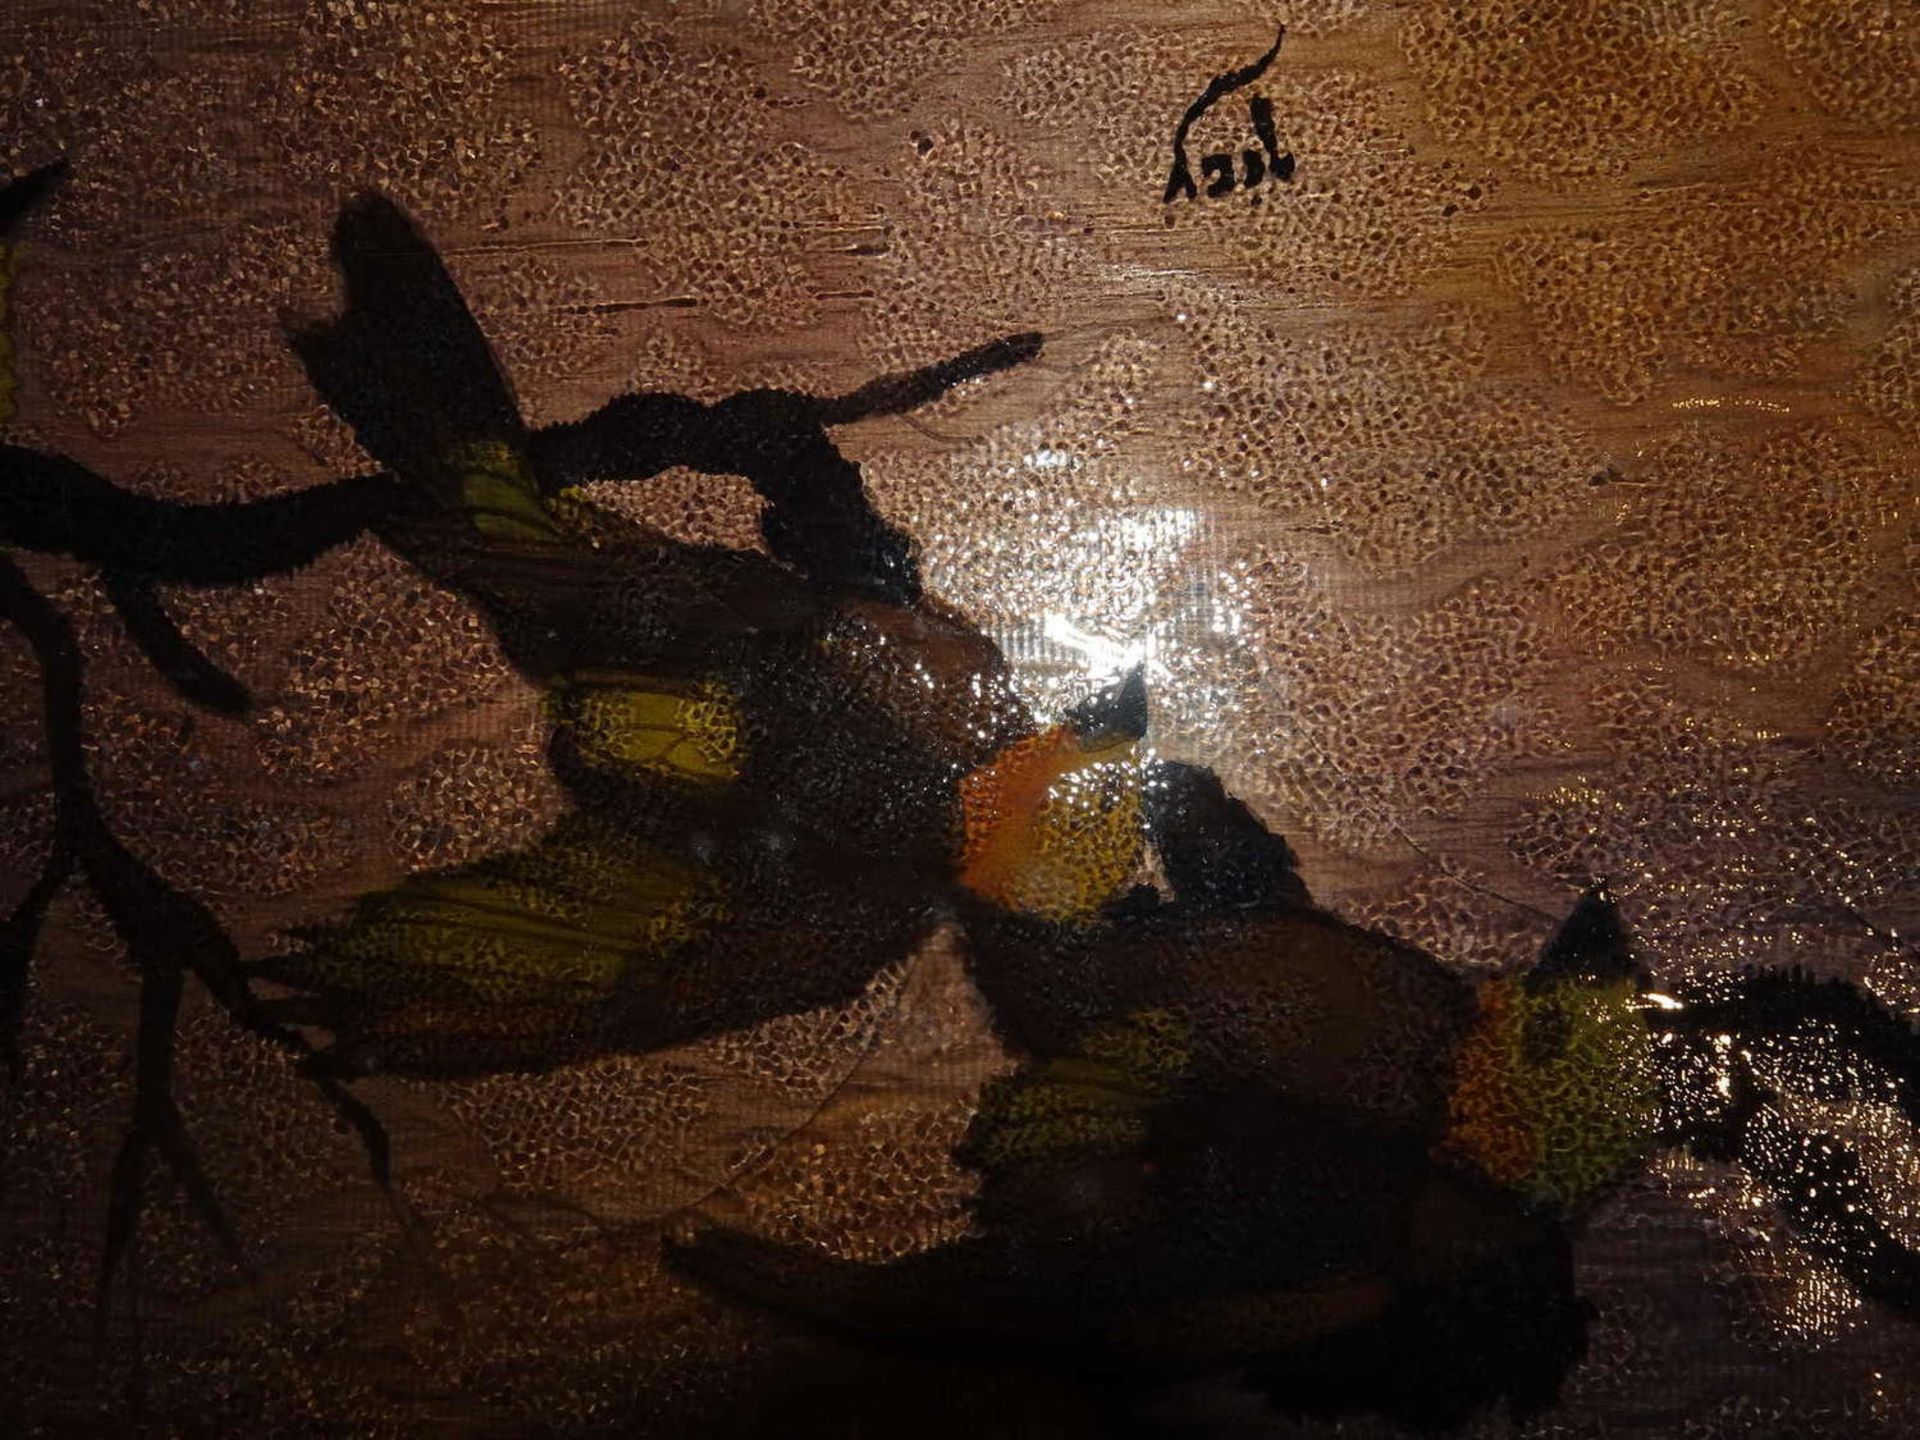 Serviertablett Hinterglasmalerei, Eisglas, signiert "Gisy", Gesamtlänge ca. 56 cm, Breite ca.27 cm. - Image 3 of 3